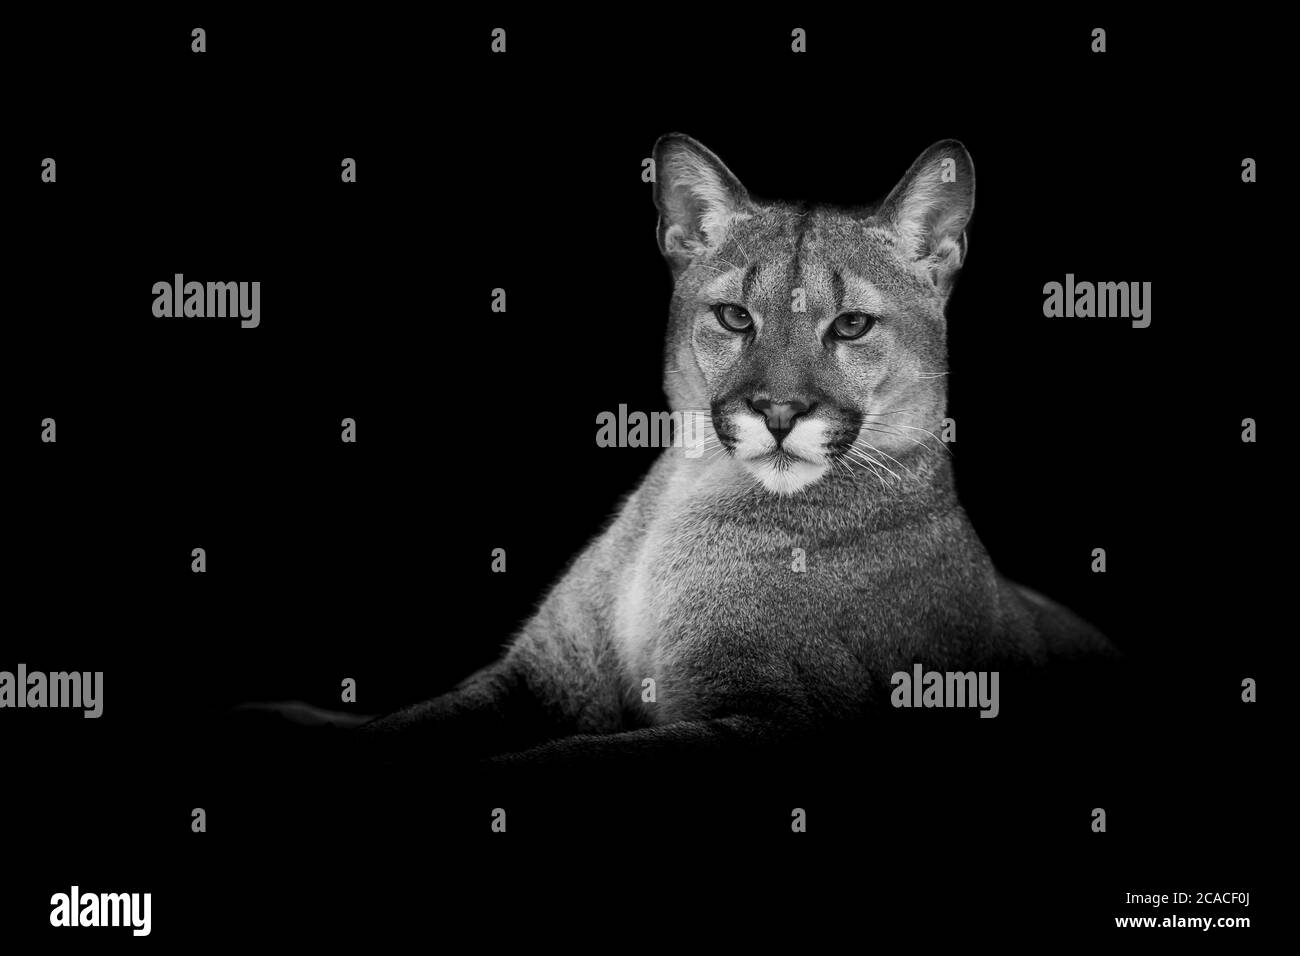 Big puma Black and White Stock Photos & Images - Alamy